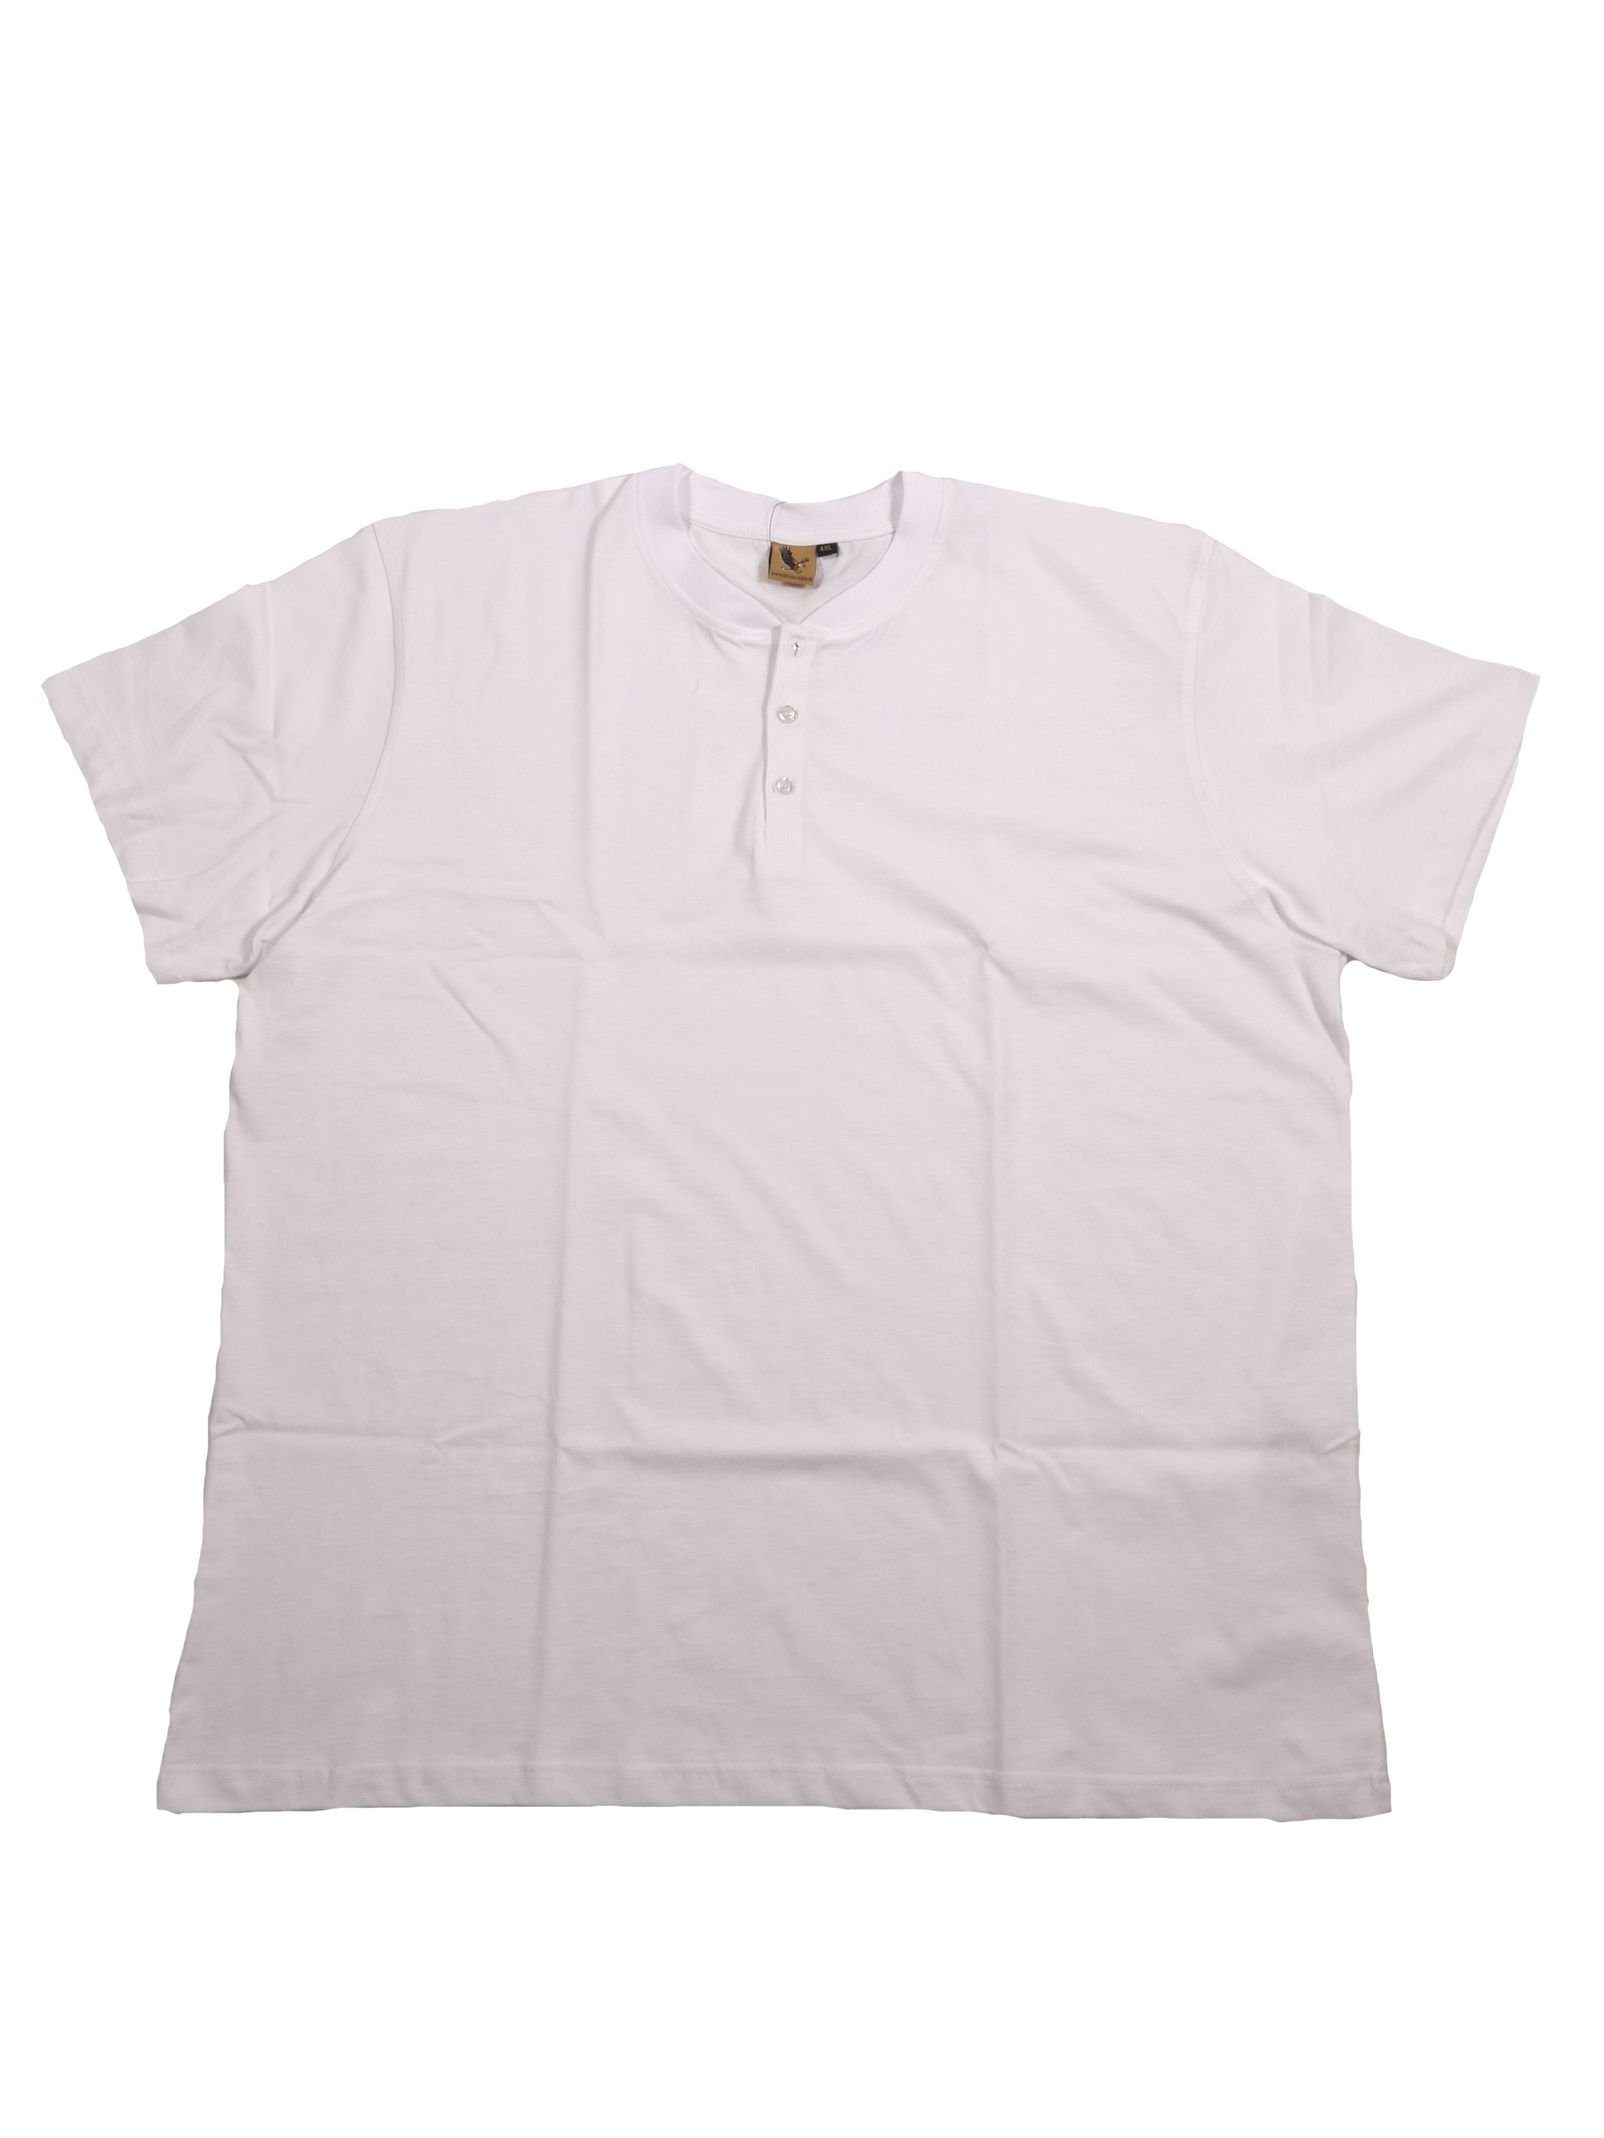 ABRAXAS T-Shirt Kurzarm-Shirt mit Knopfleiste von Abraxas bis 12XL, weiß